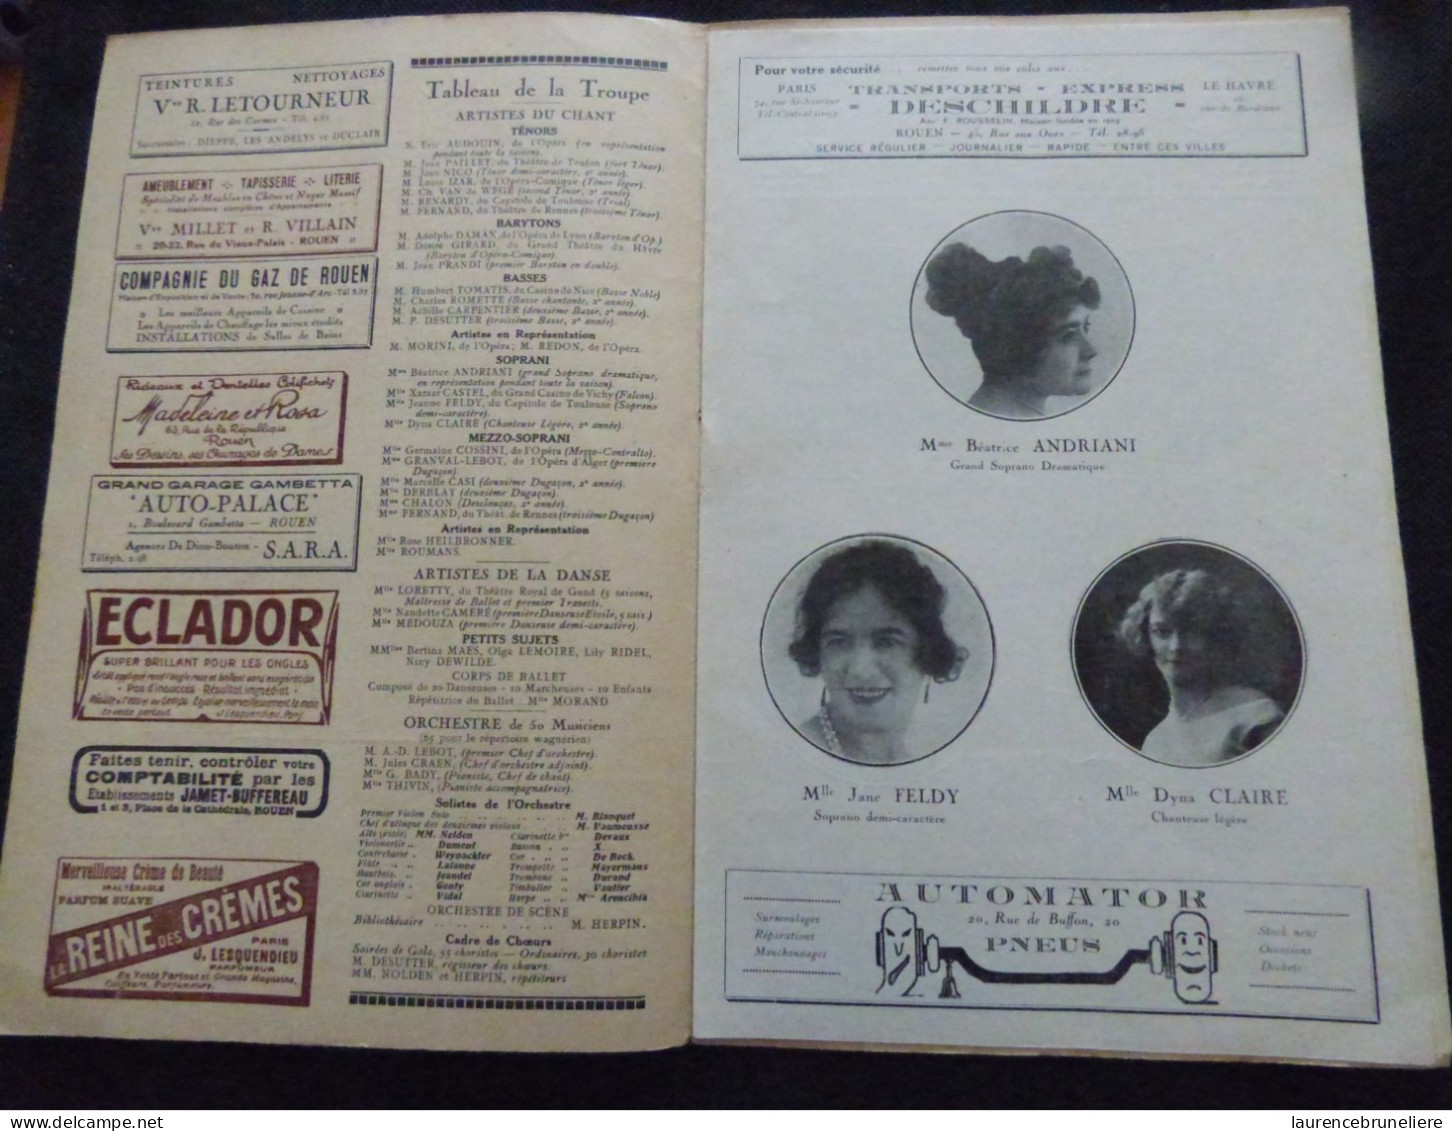 THEATRE DES ARTS DE ROUEN - SAISON 1926-1927 - PROGRAMME OFFICIEL - Programs